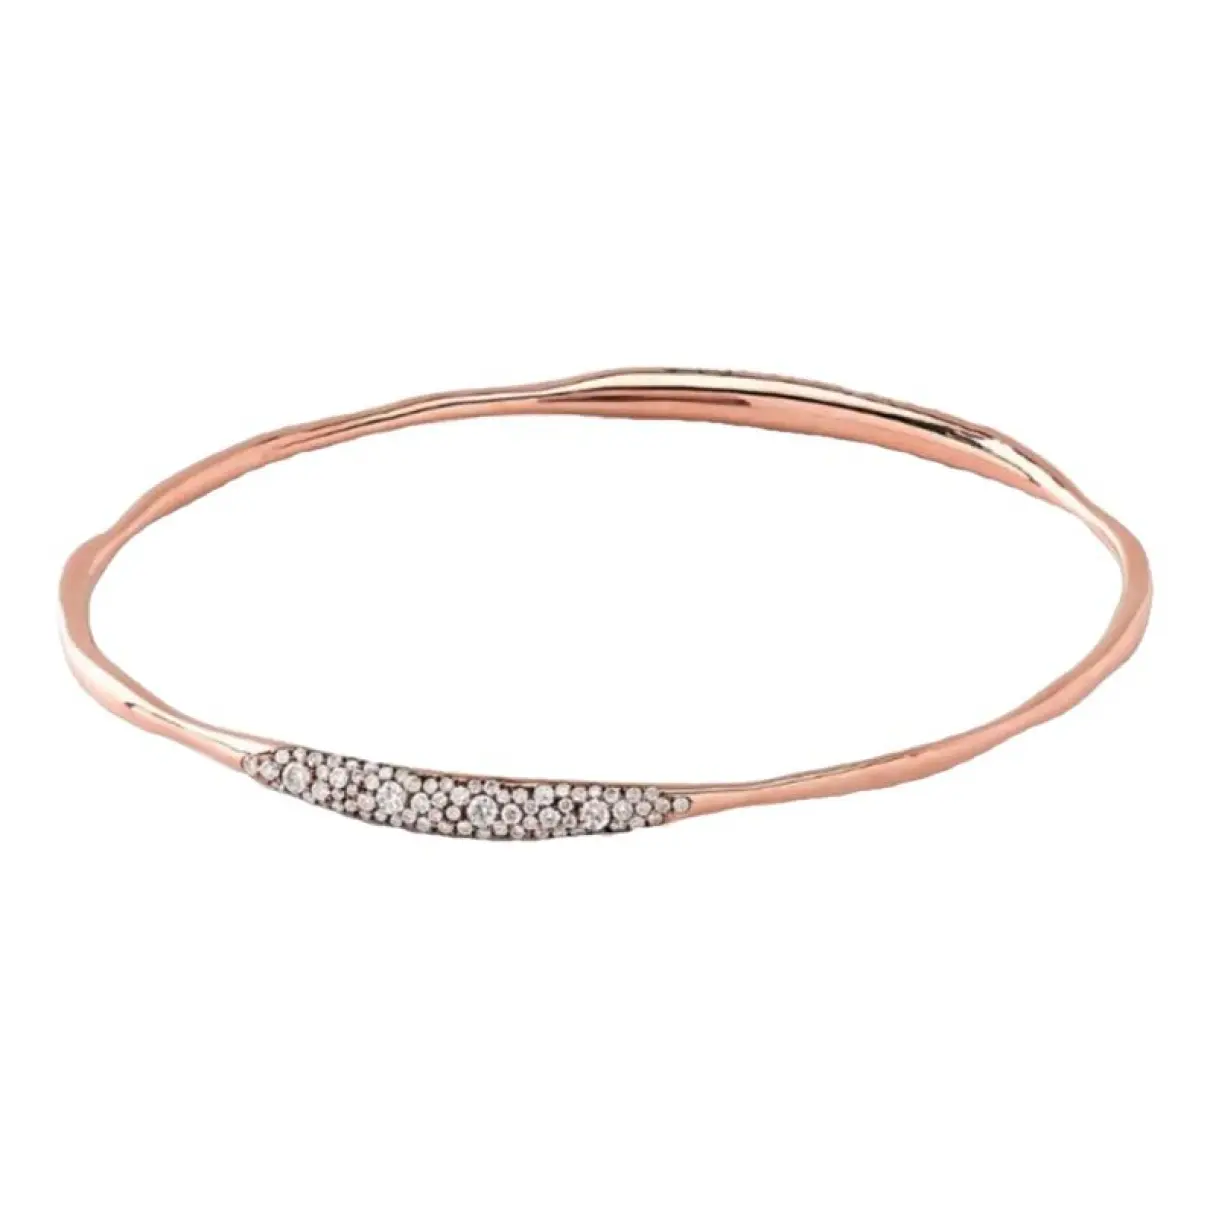 Pink gold bracelet